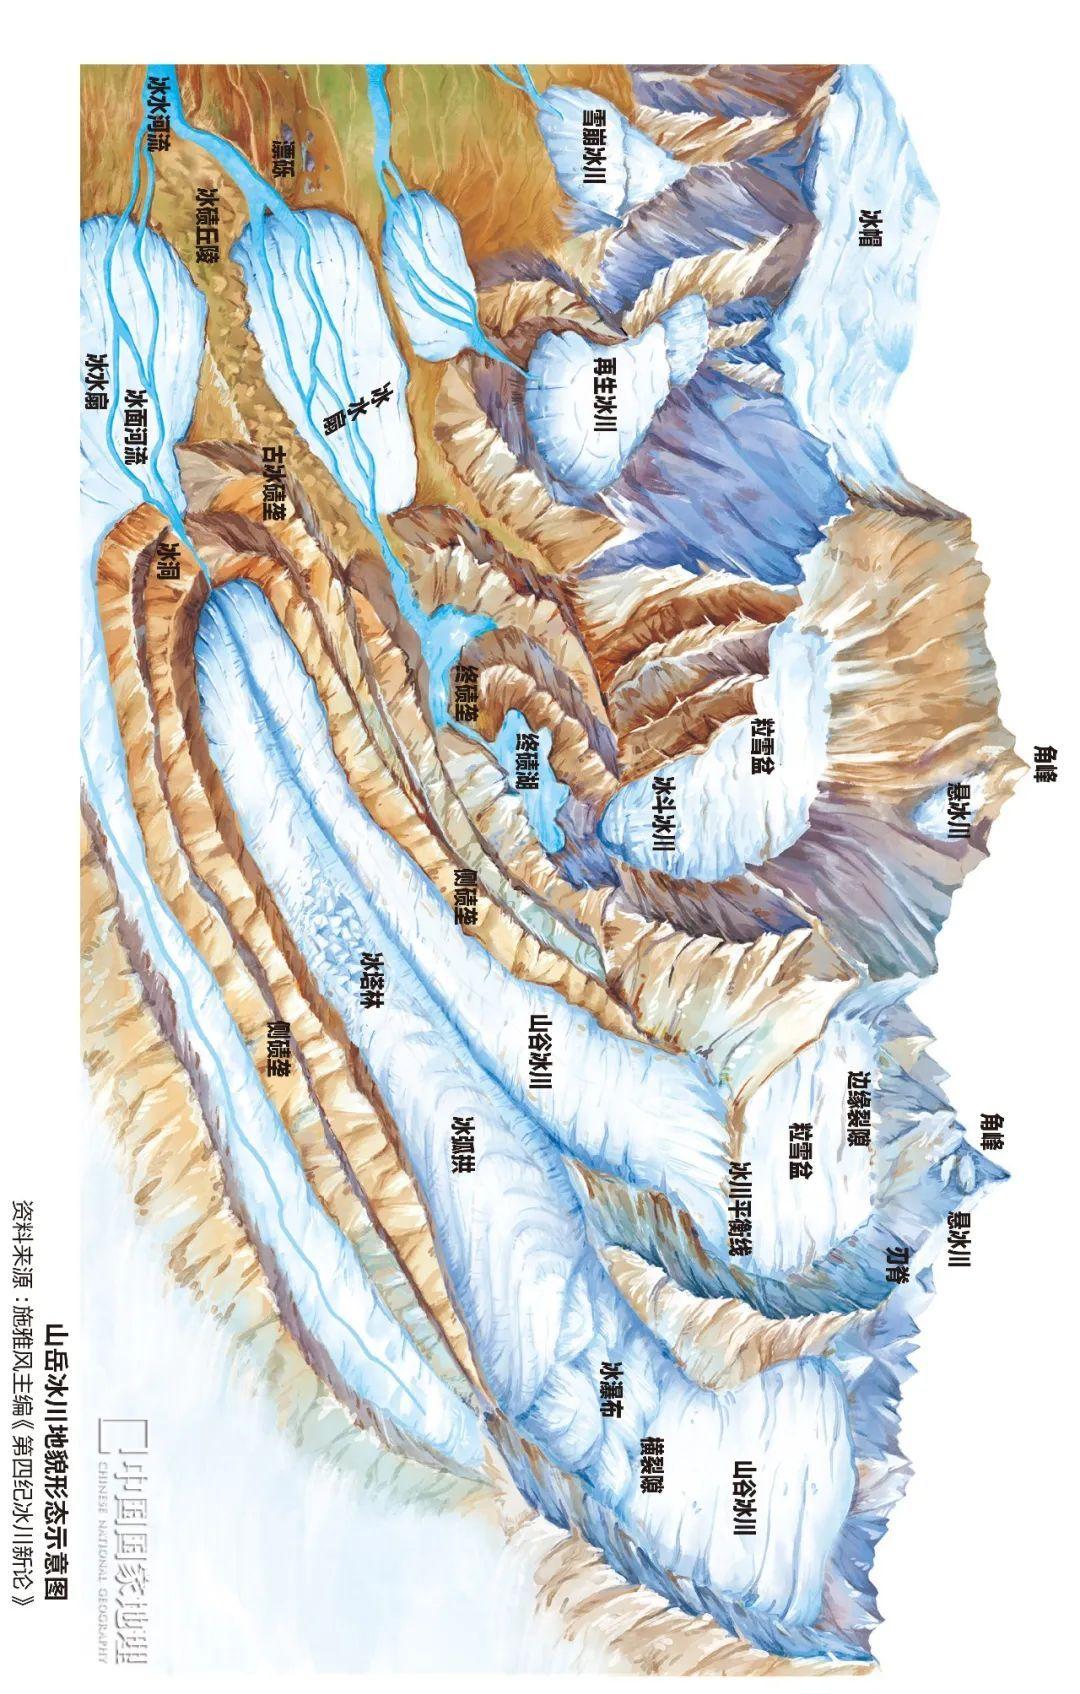 冰川地貌简图图片